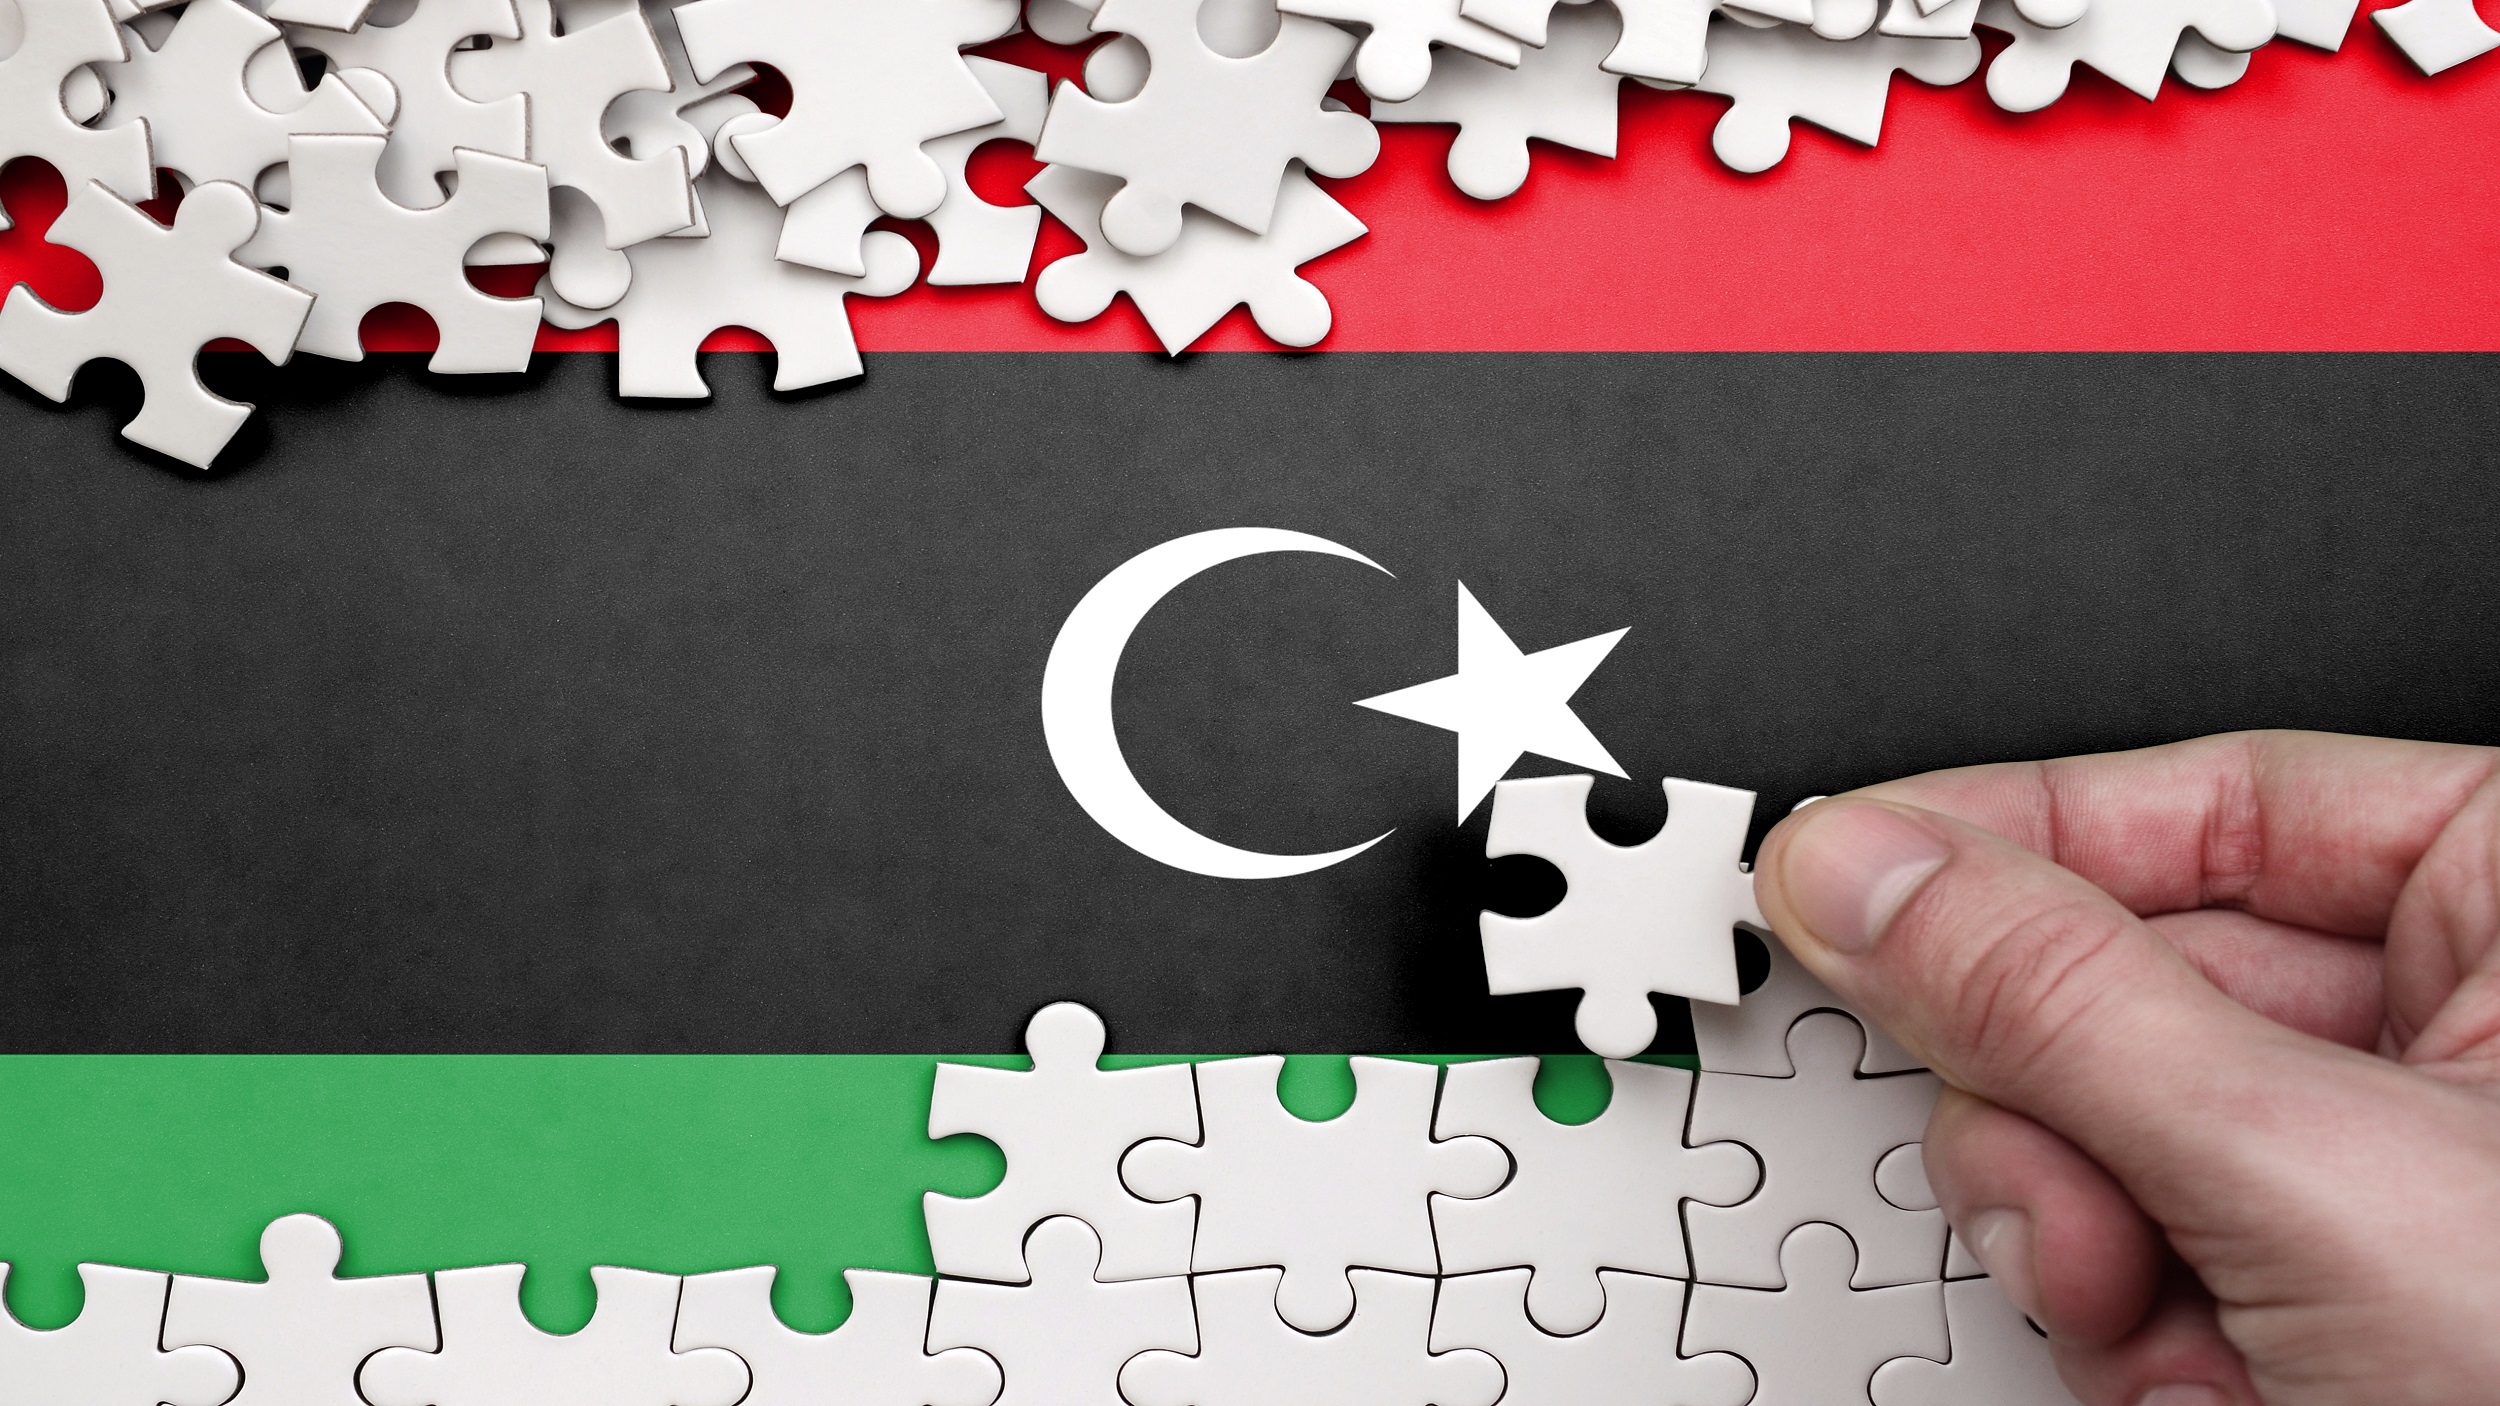 Careful Optimism in Libyan Peace Talks